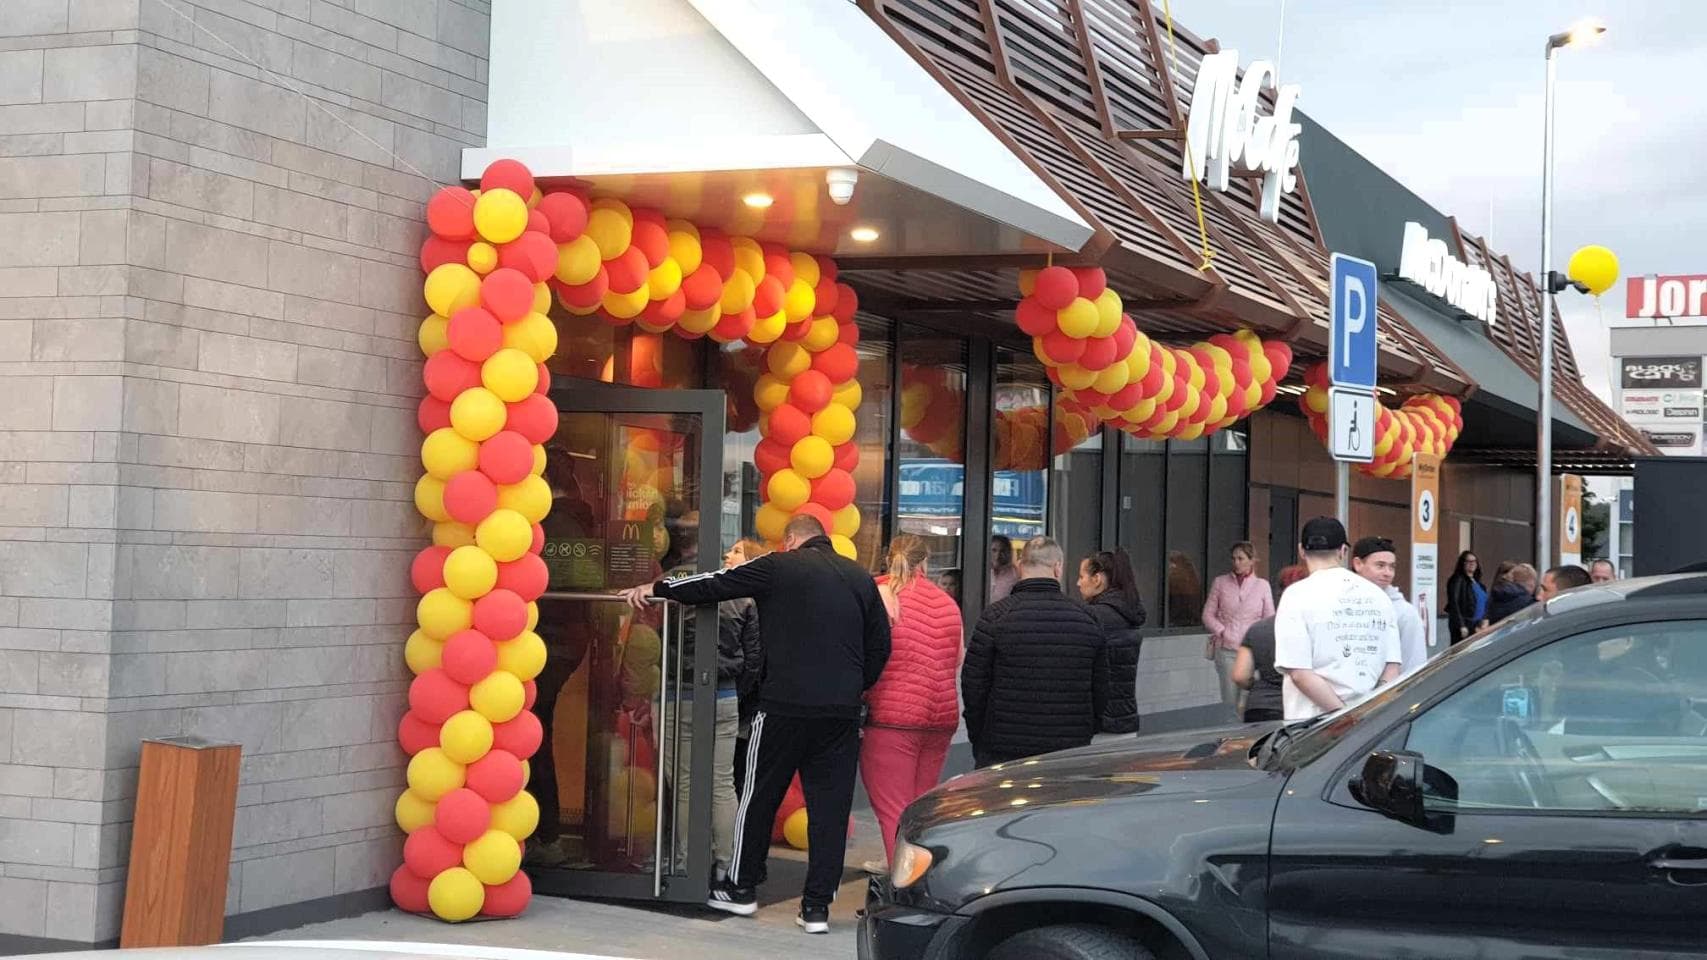 Szlovákia olyan régiójában nyit éttermet a McDonald's, ahol a közelben még nem volt